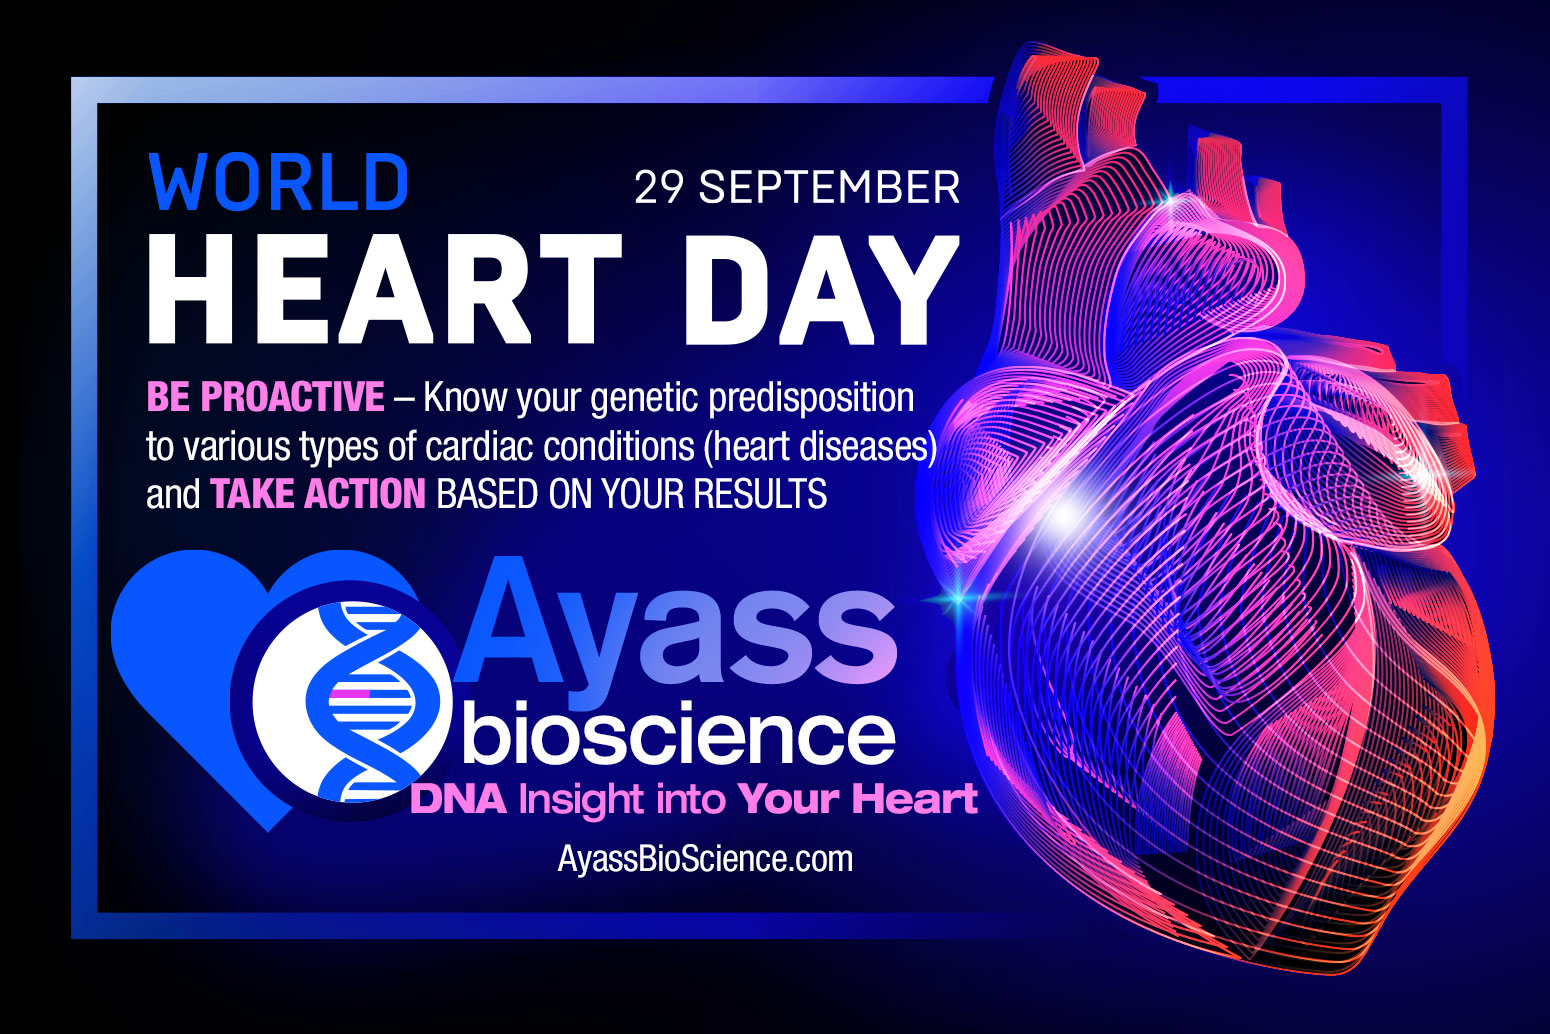 World Heart Day September 29 2020